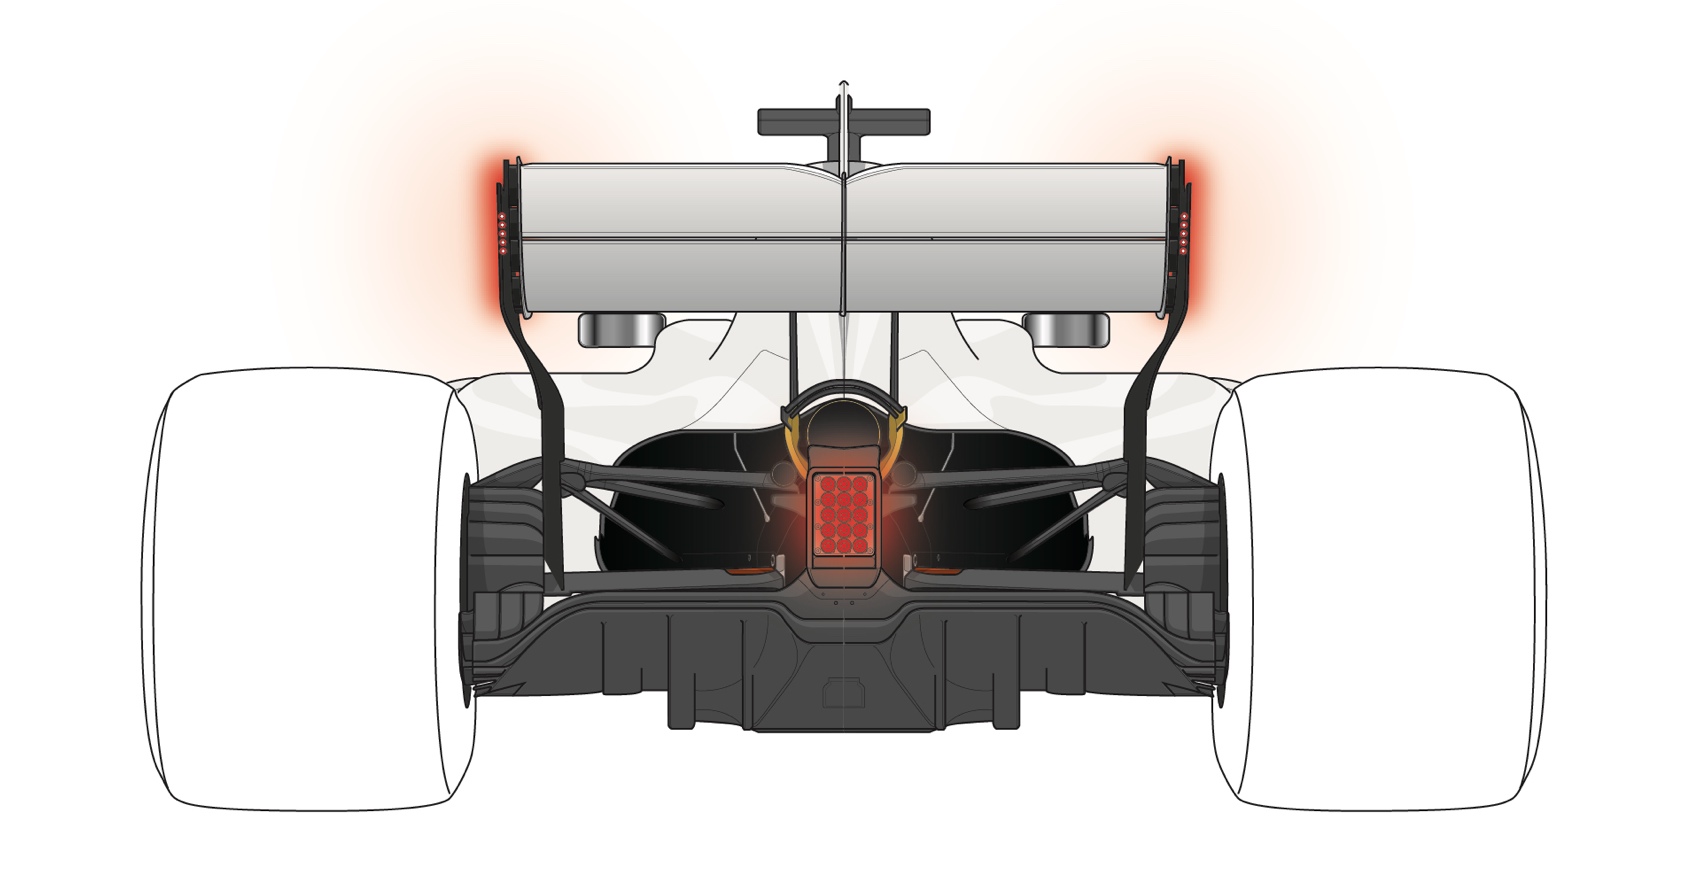 bestøver Centrum maskulinitet F1 technical regulations for 2019 - Safety - Motorsport Technology